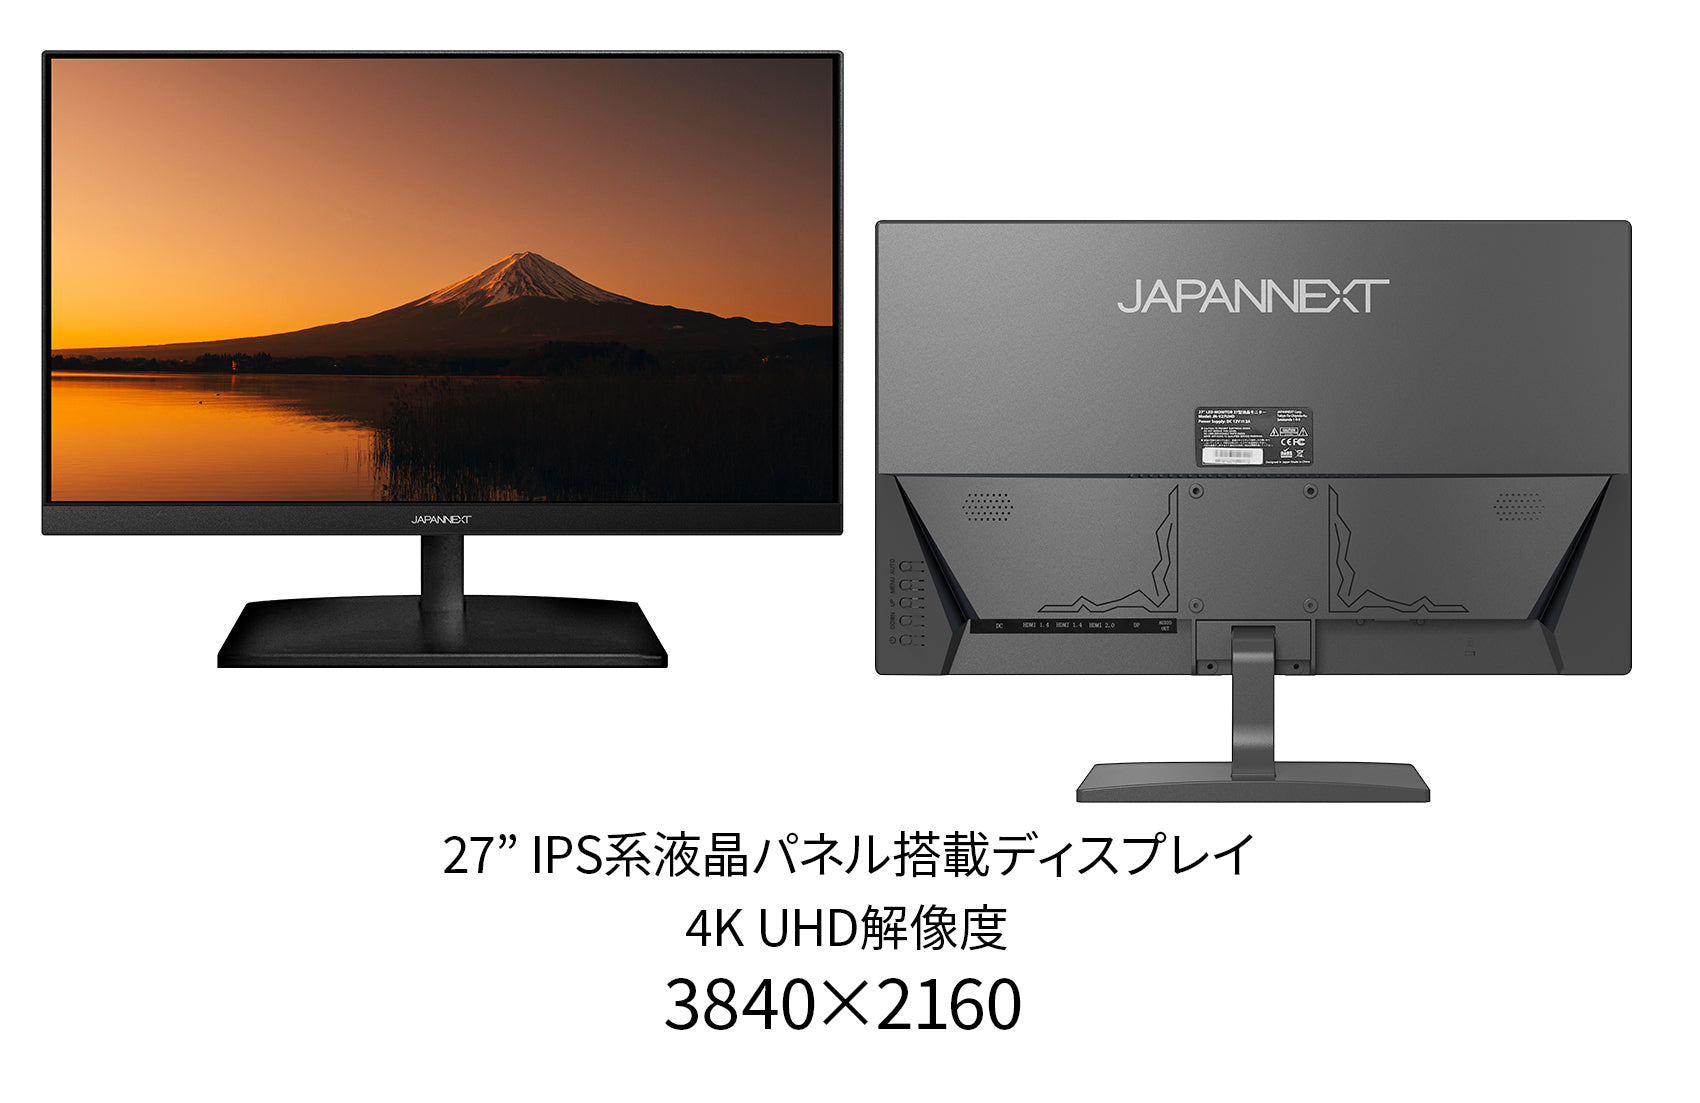 JAPANNEXT JN-V27UHD-IPS-D 27インチ 4K